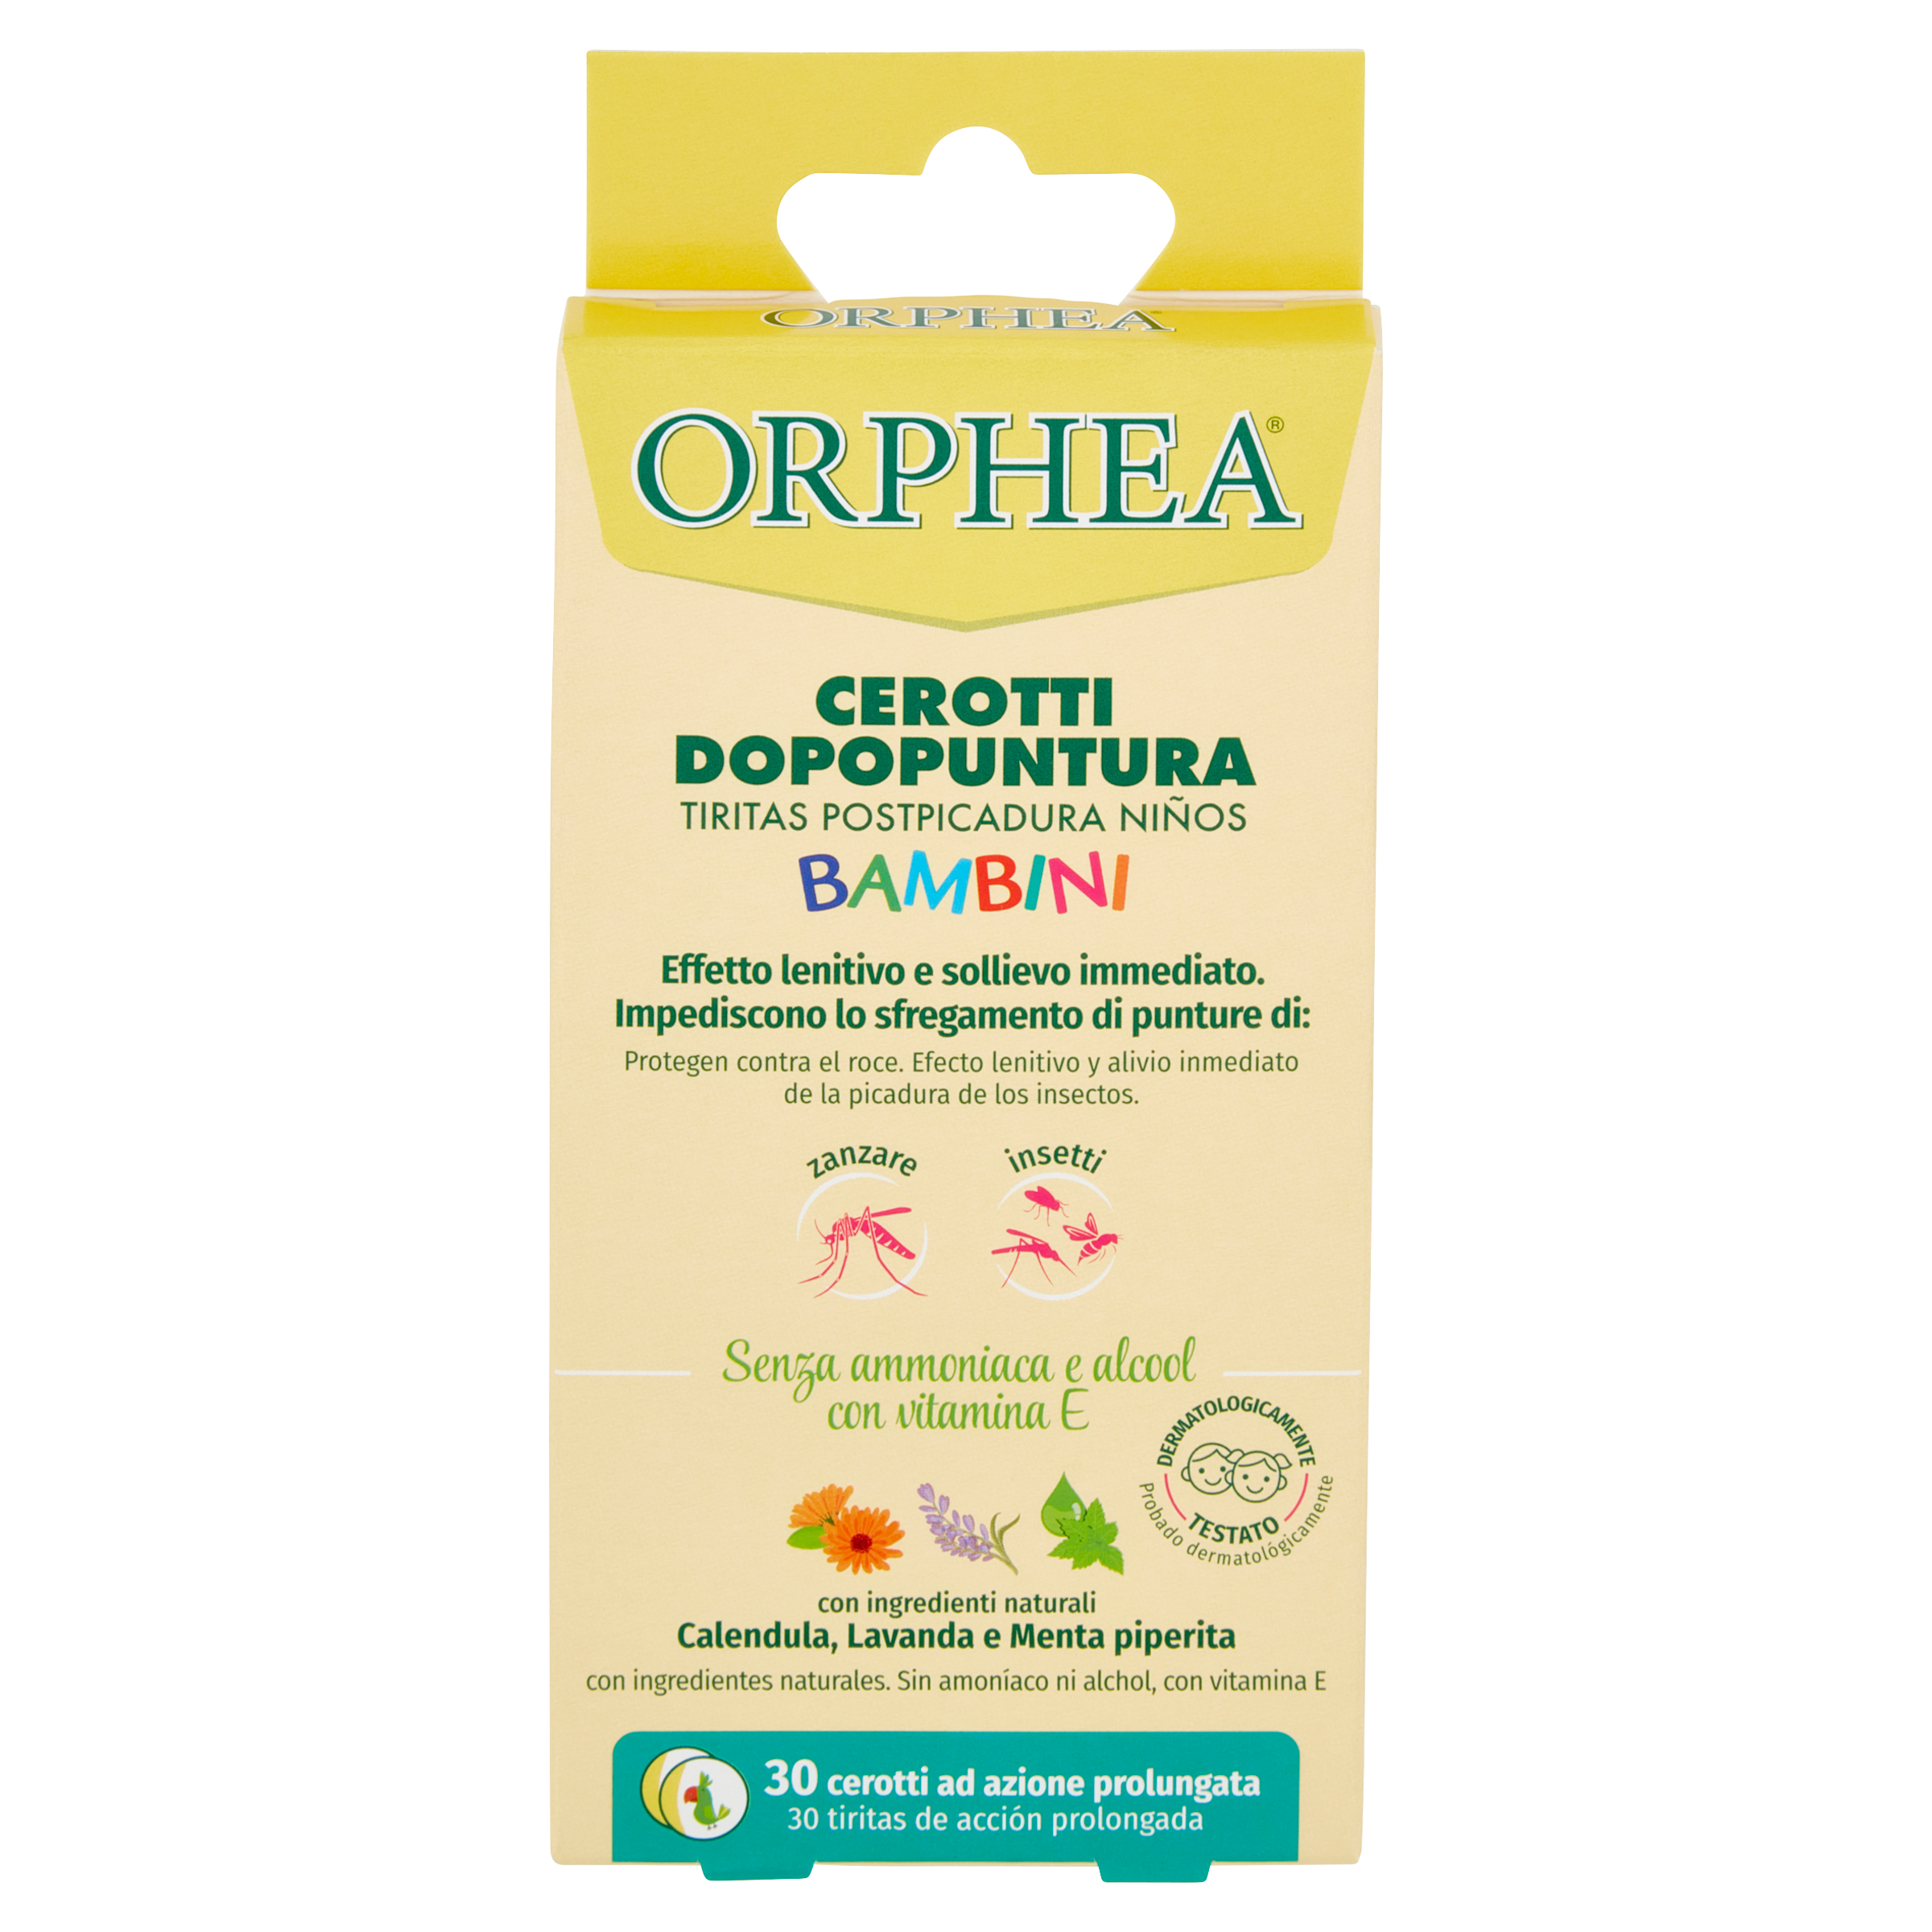 Plasturi pentru copii impotriva intepaturilor de insecte, Orhpea